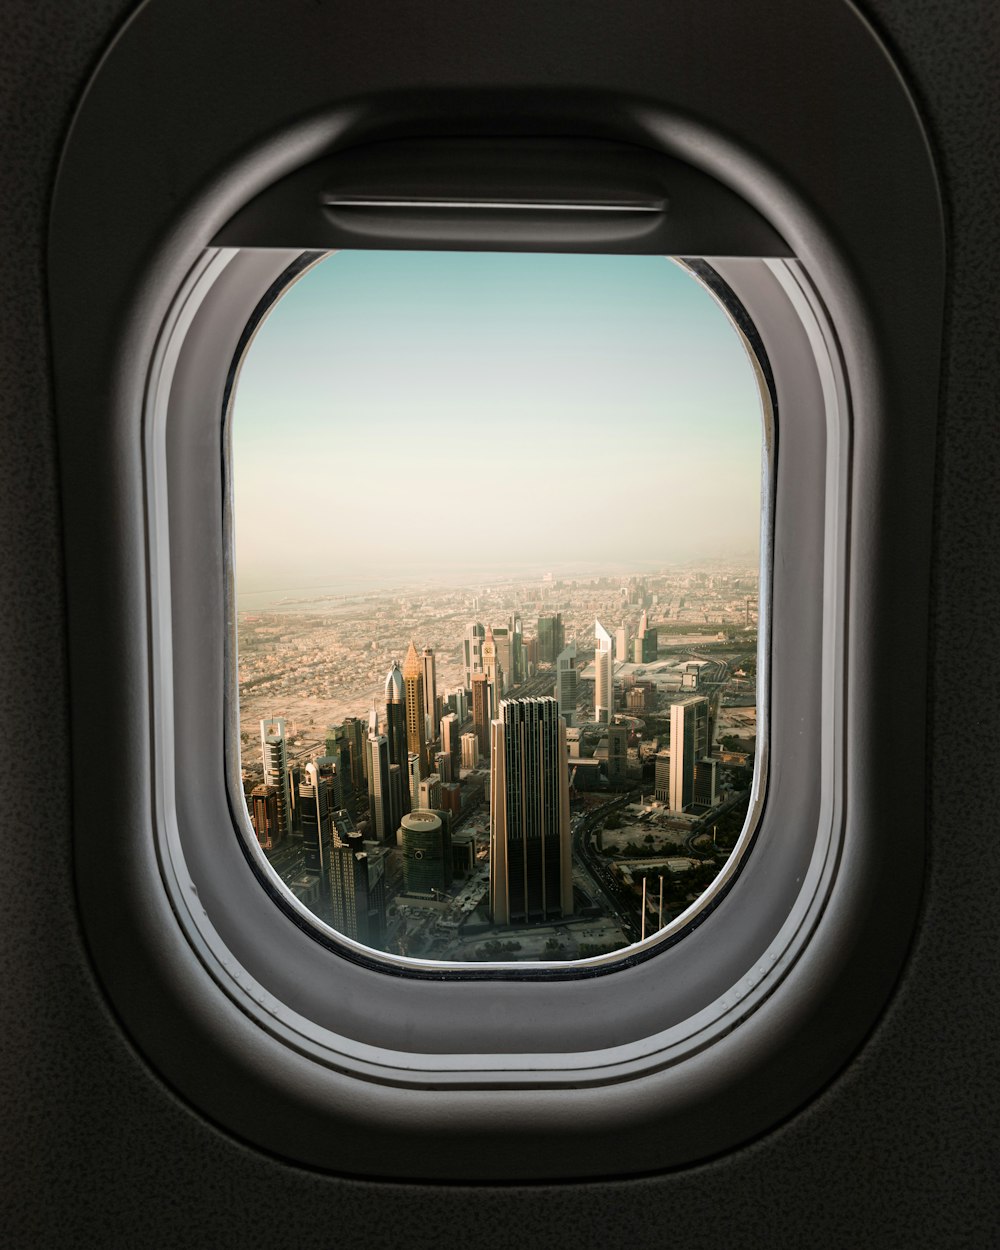 Flugzeugfenster Blick auf die Stadt während des Tages